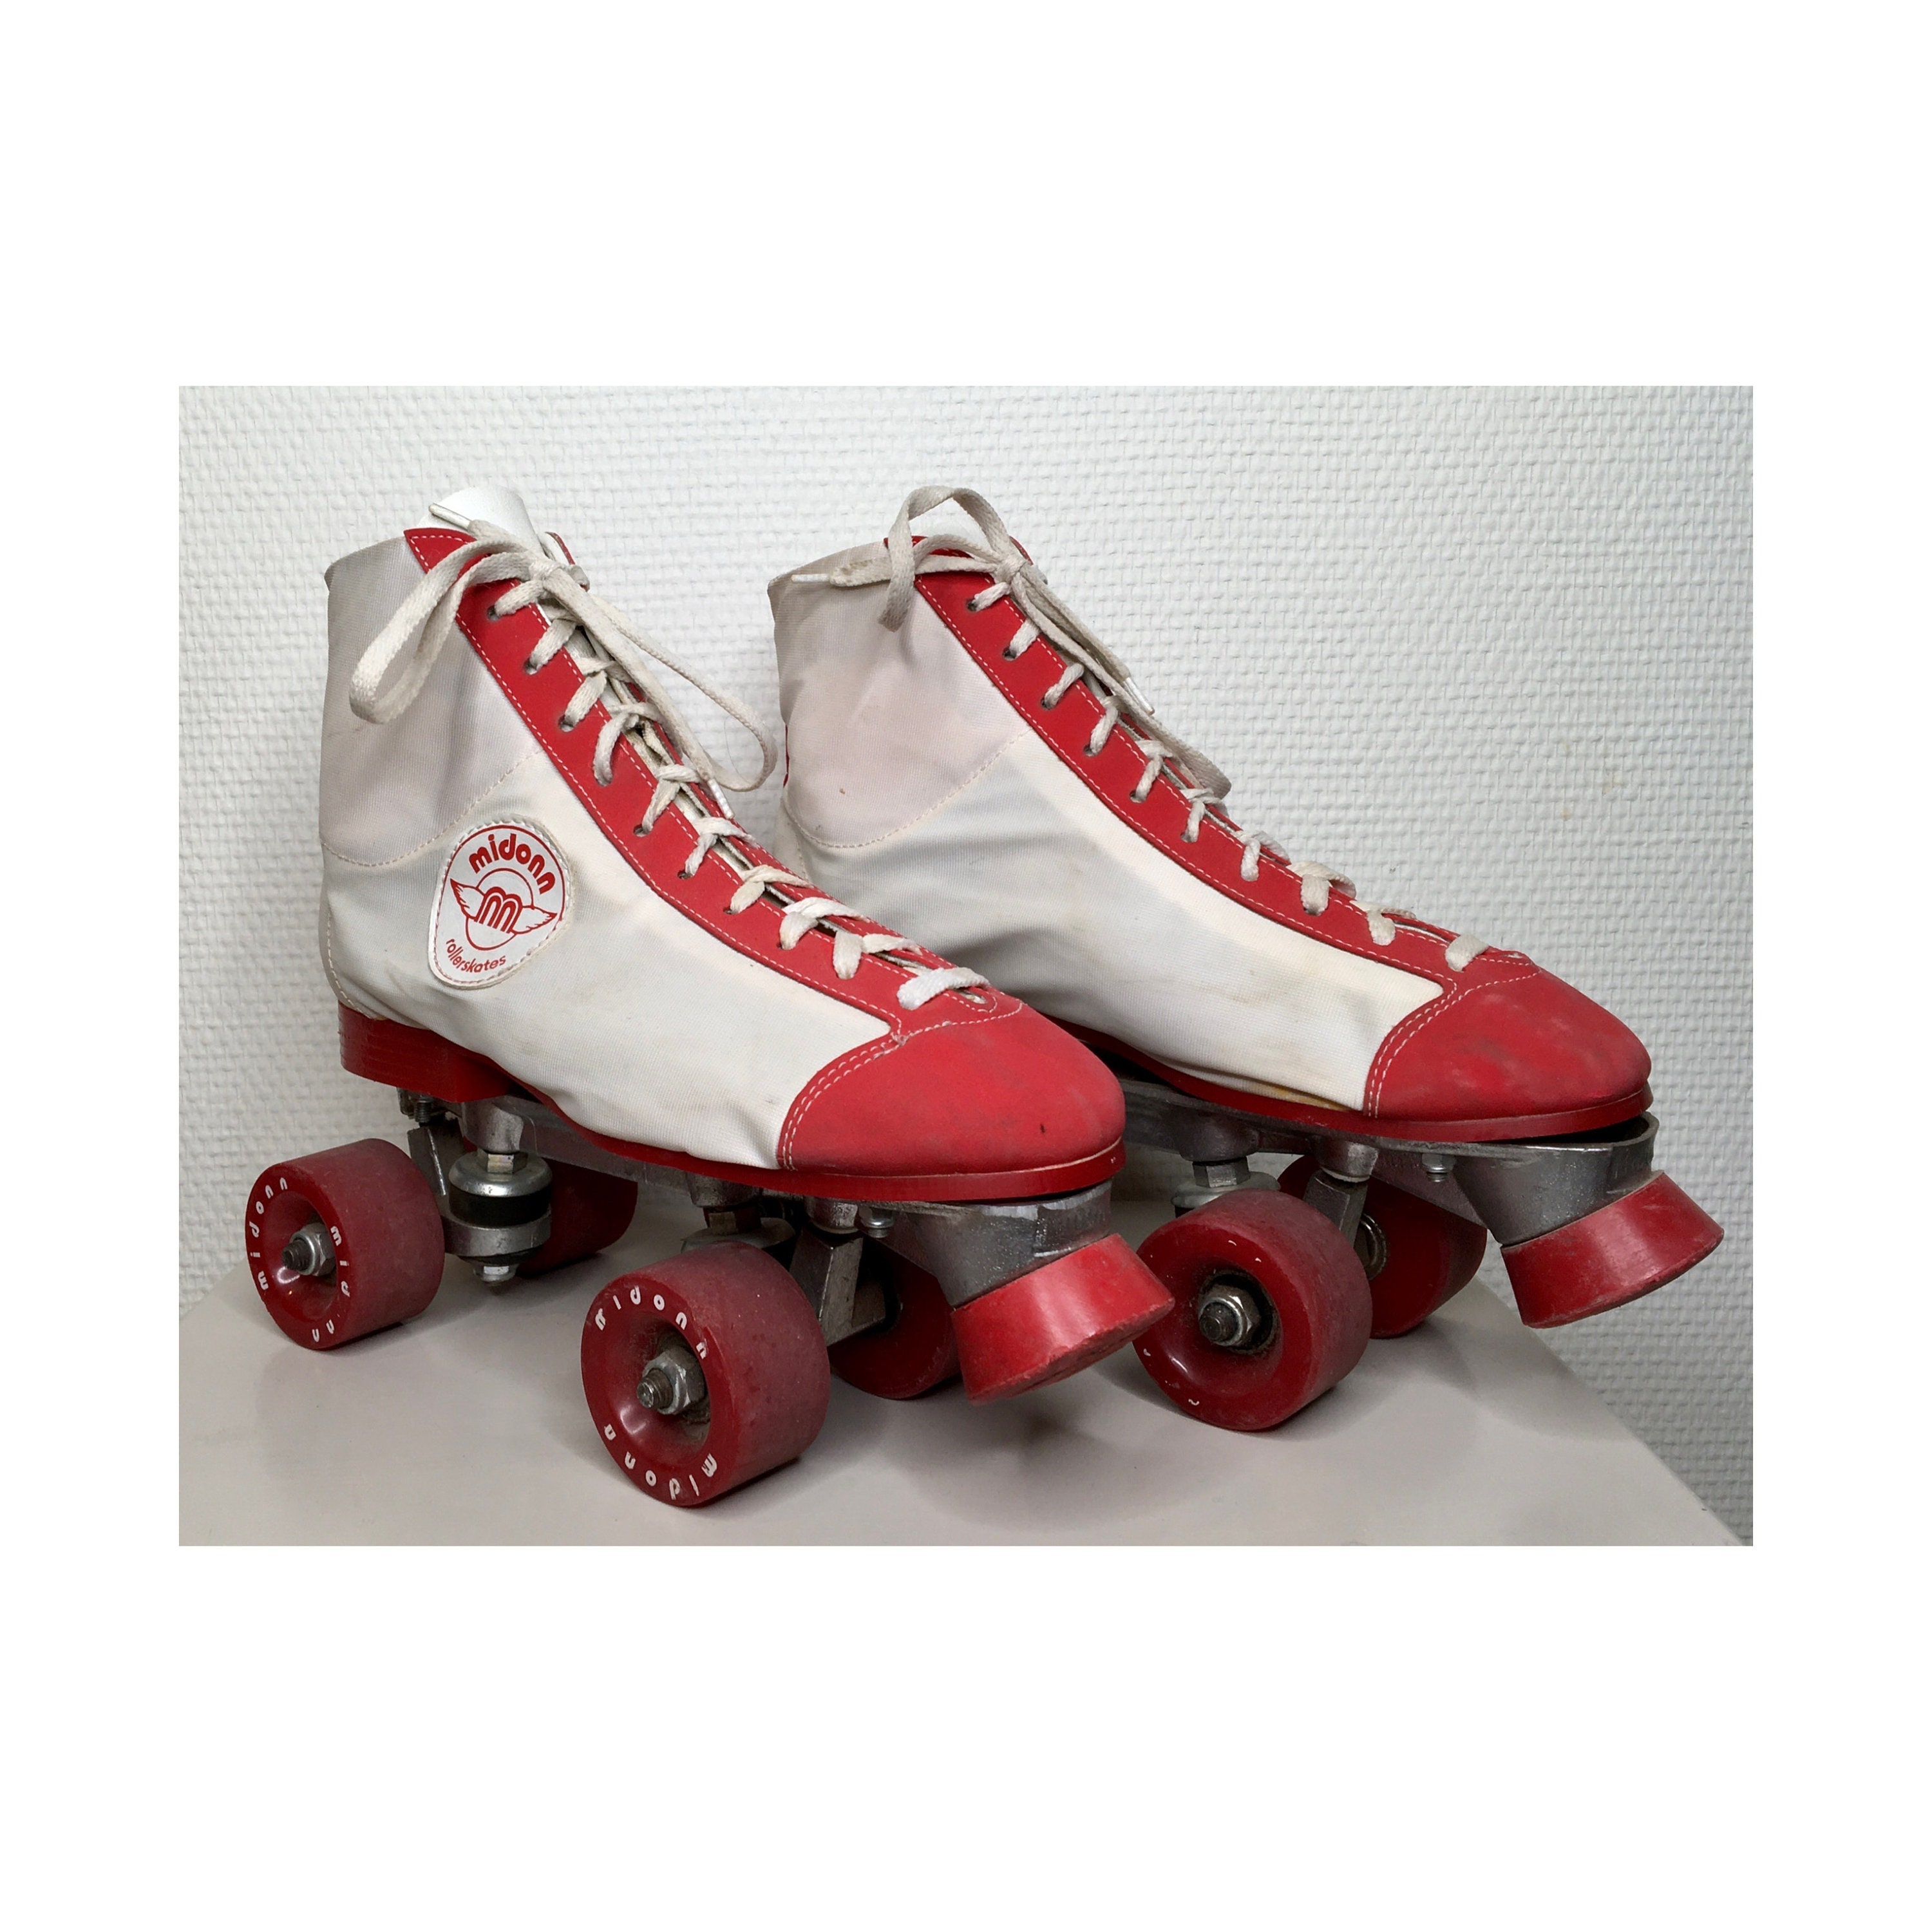 Roller skates size 7 -  España